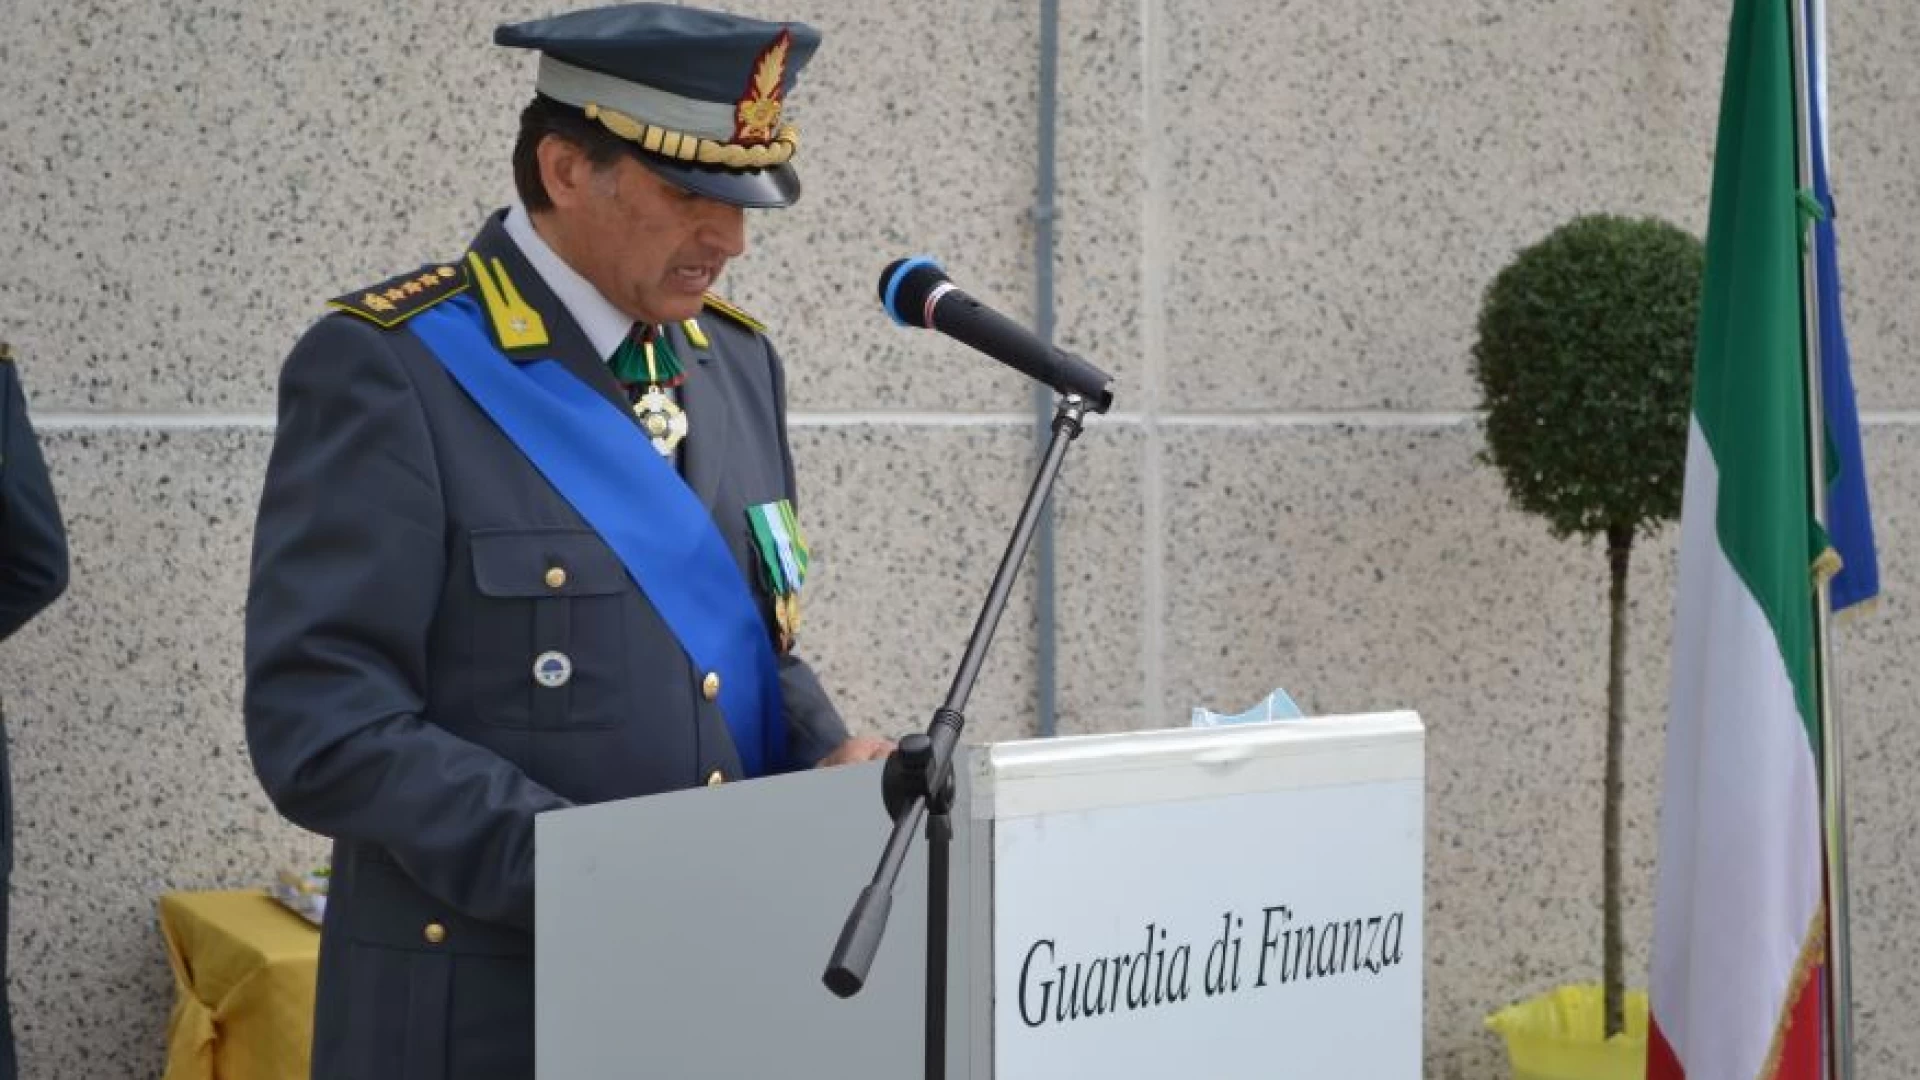 247° Anniversario Fondazione Guardia di Finanza. A Venafro la cerimonia ufficiale del Comando Provinciale. Illustrato il bilancio operativo 2020